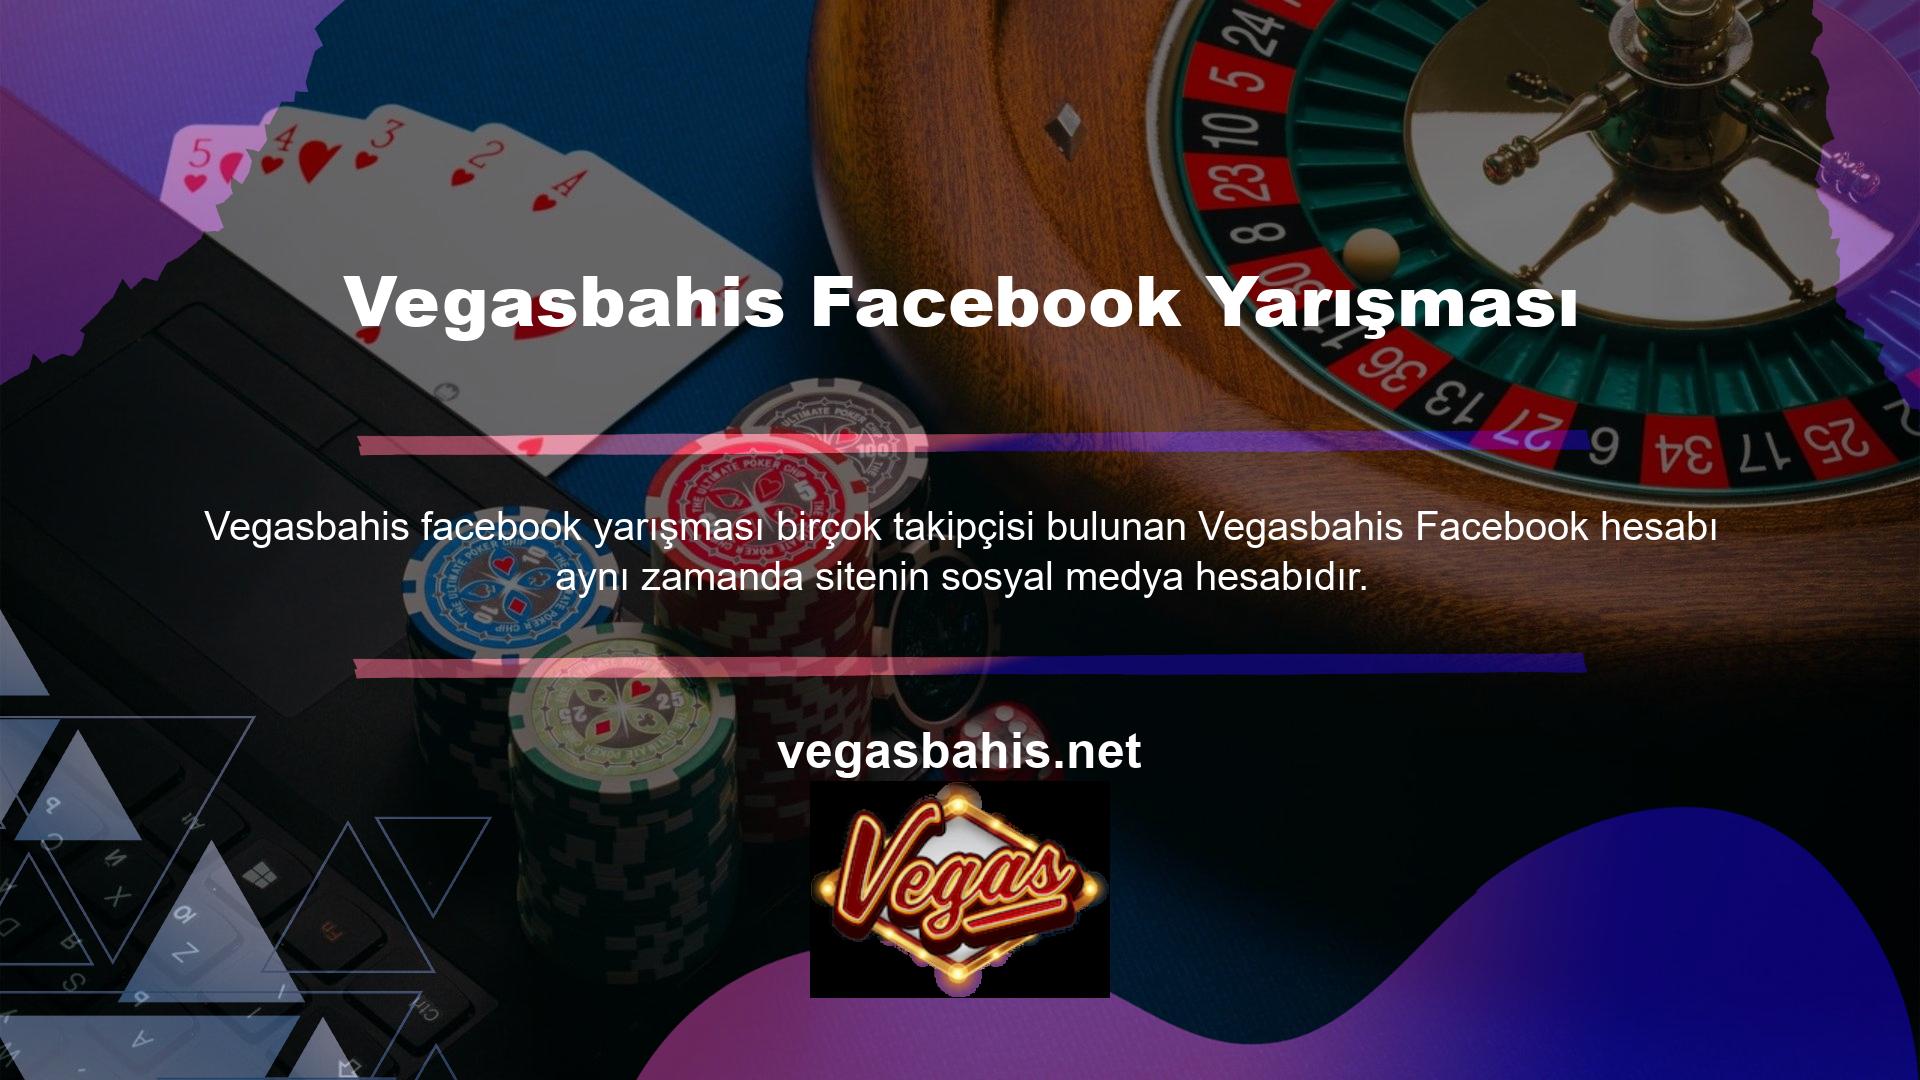 Bu hesabı aktif olarak kullanan Vegasbahis sosyal medya yarışması ilk olarak bu hesap üzerinden yapılmıştır